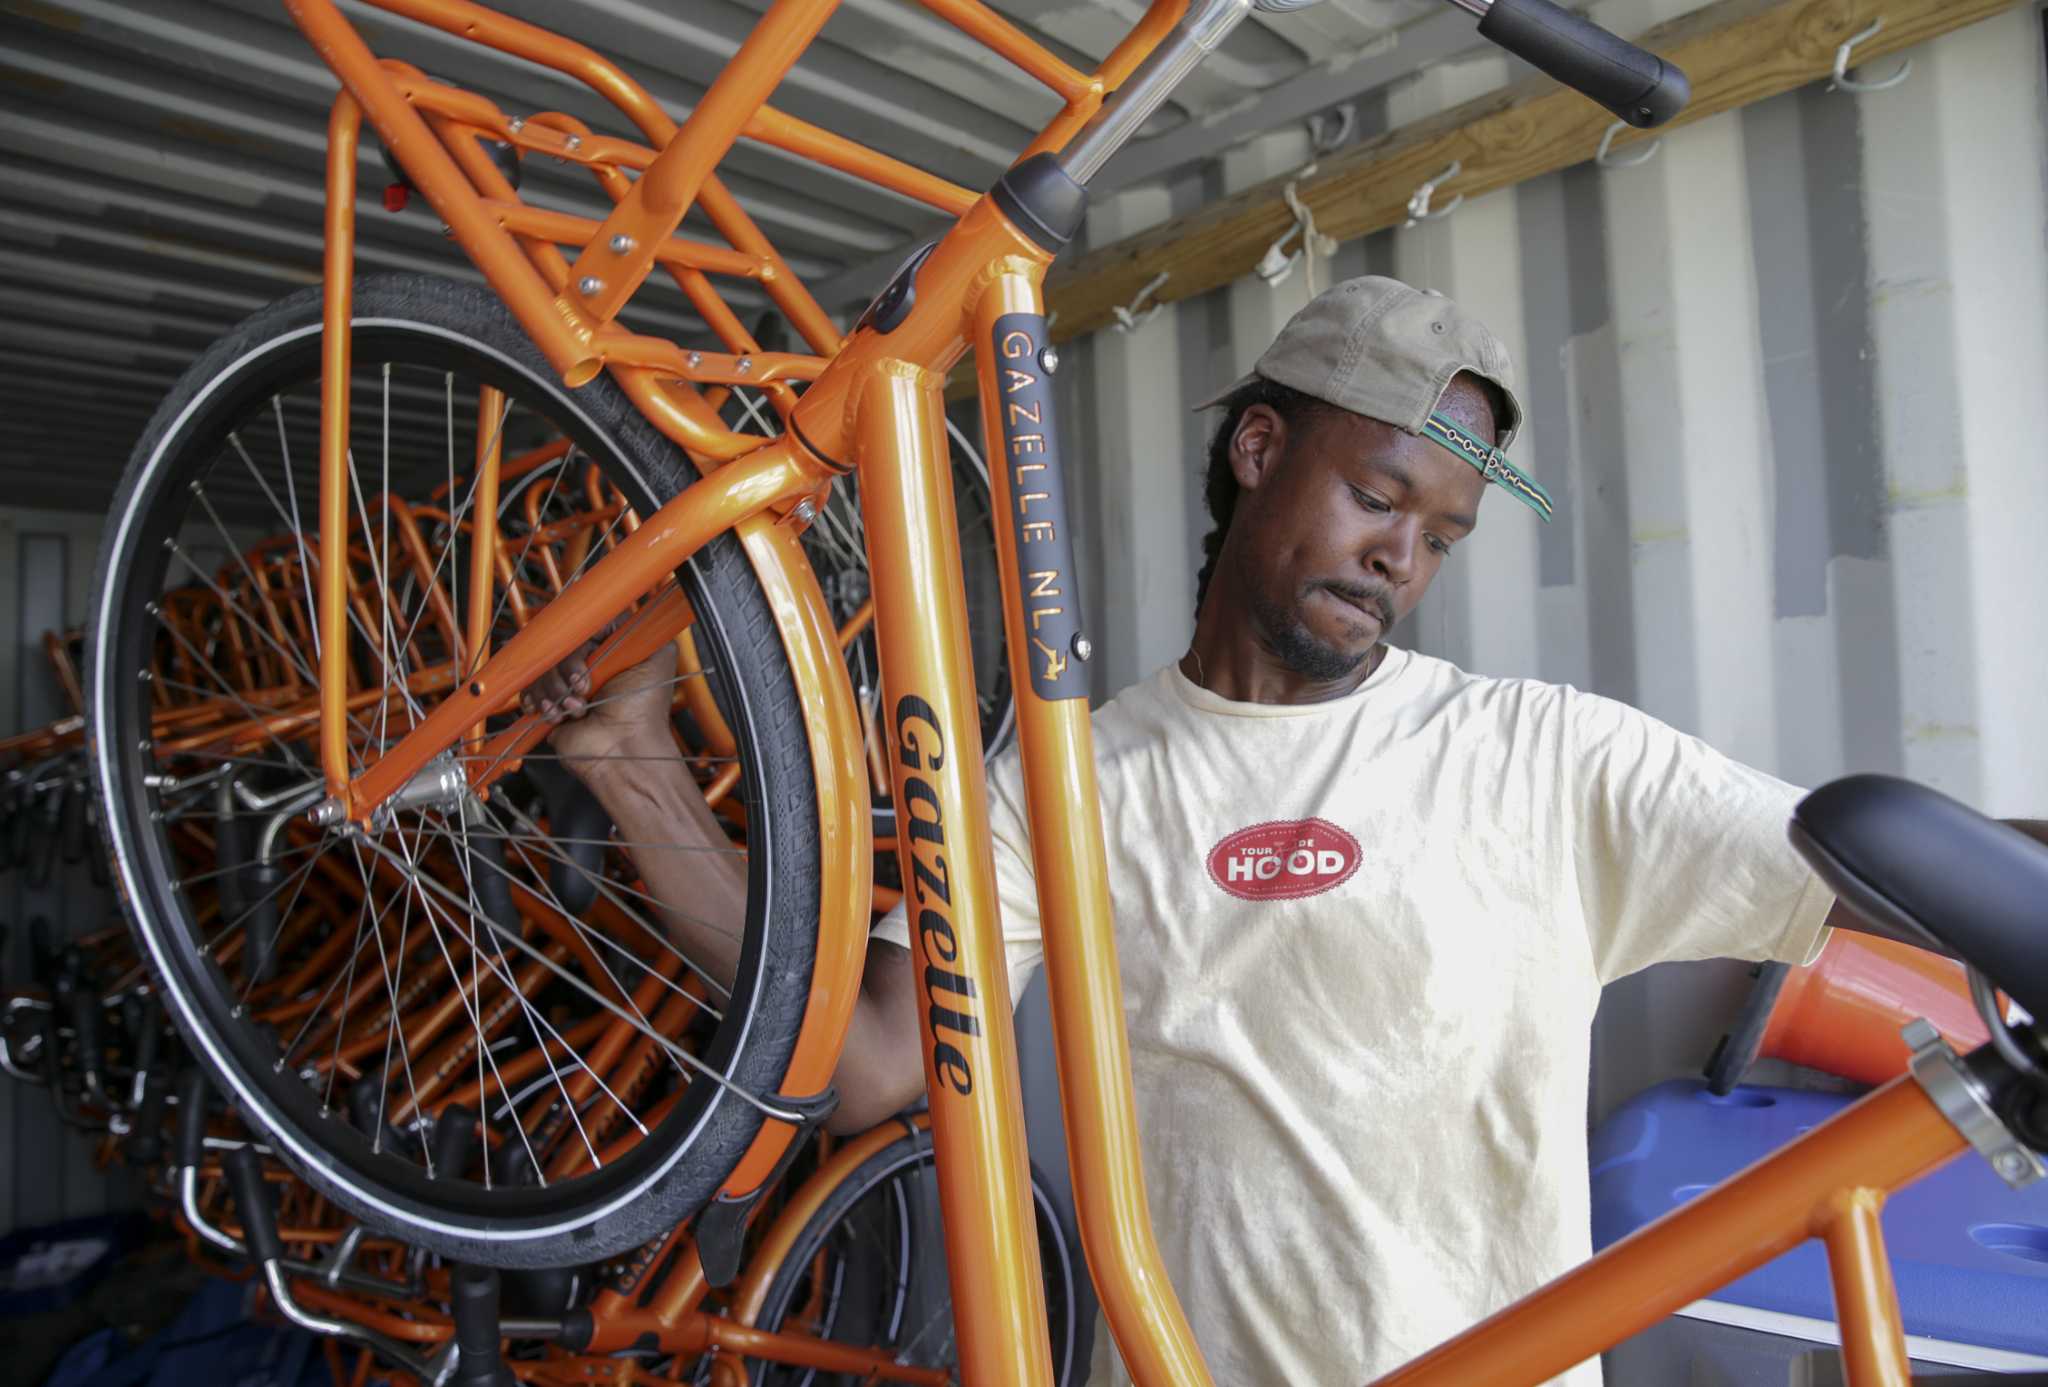 New bikes bring new life to historic Third Ward